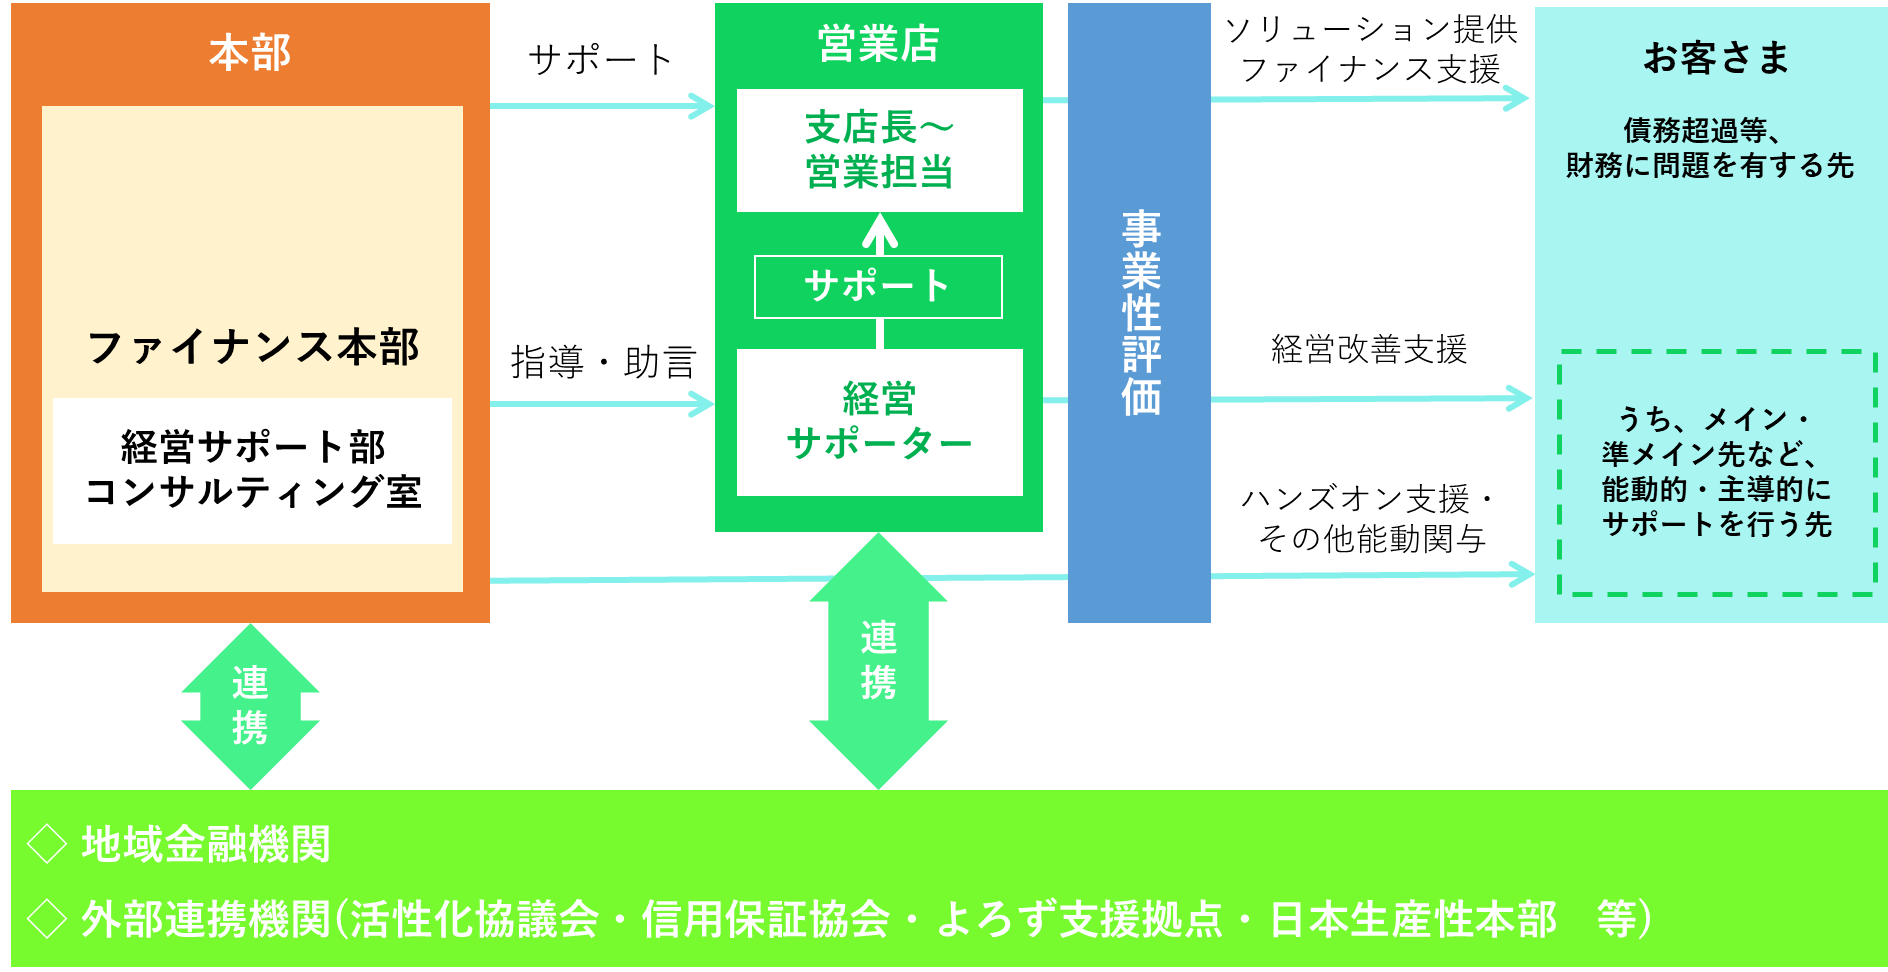 体制イメージ図